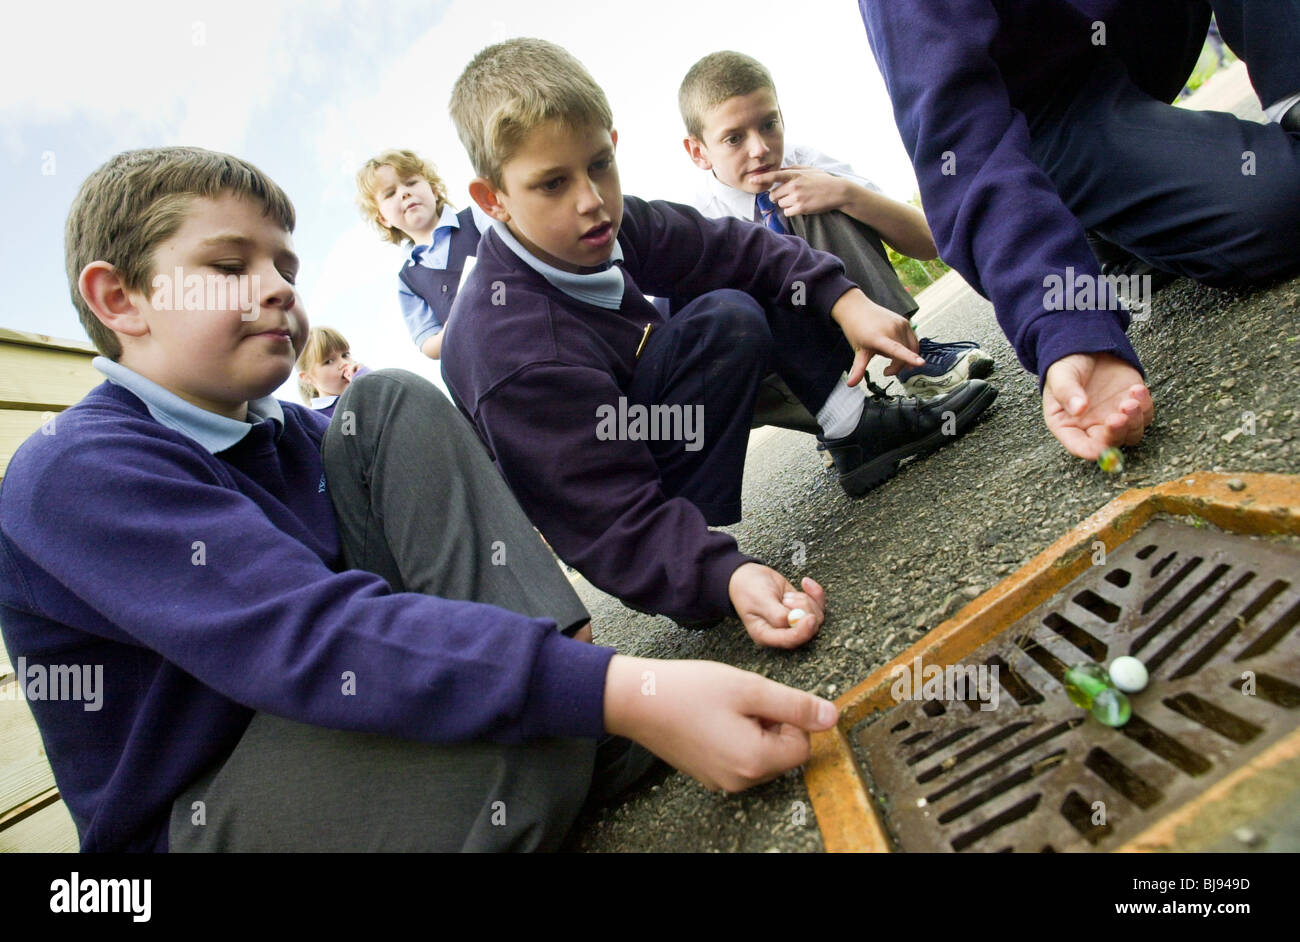 Garçons jouant aux billes d'une aire de jeux traditionnels se joue sur la cour de récréation d'une école au Pays de Galles, Royaume-Uni Banque D'Images